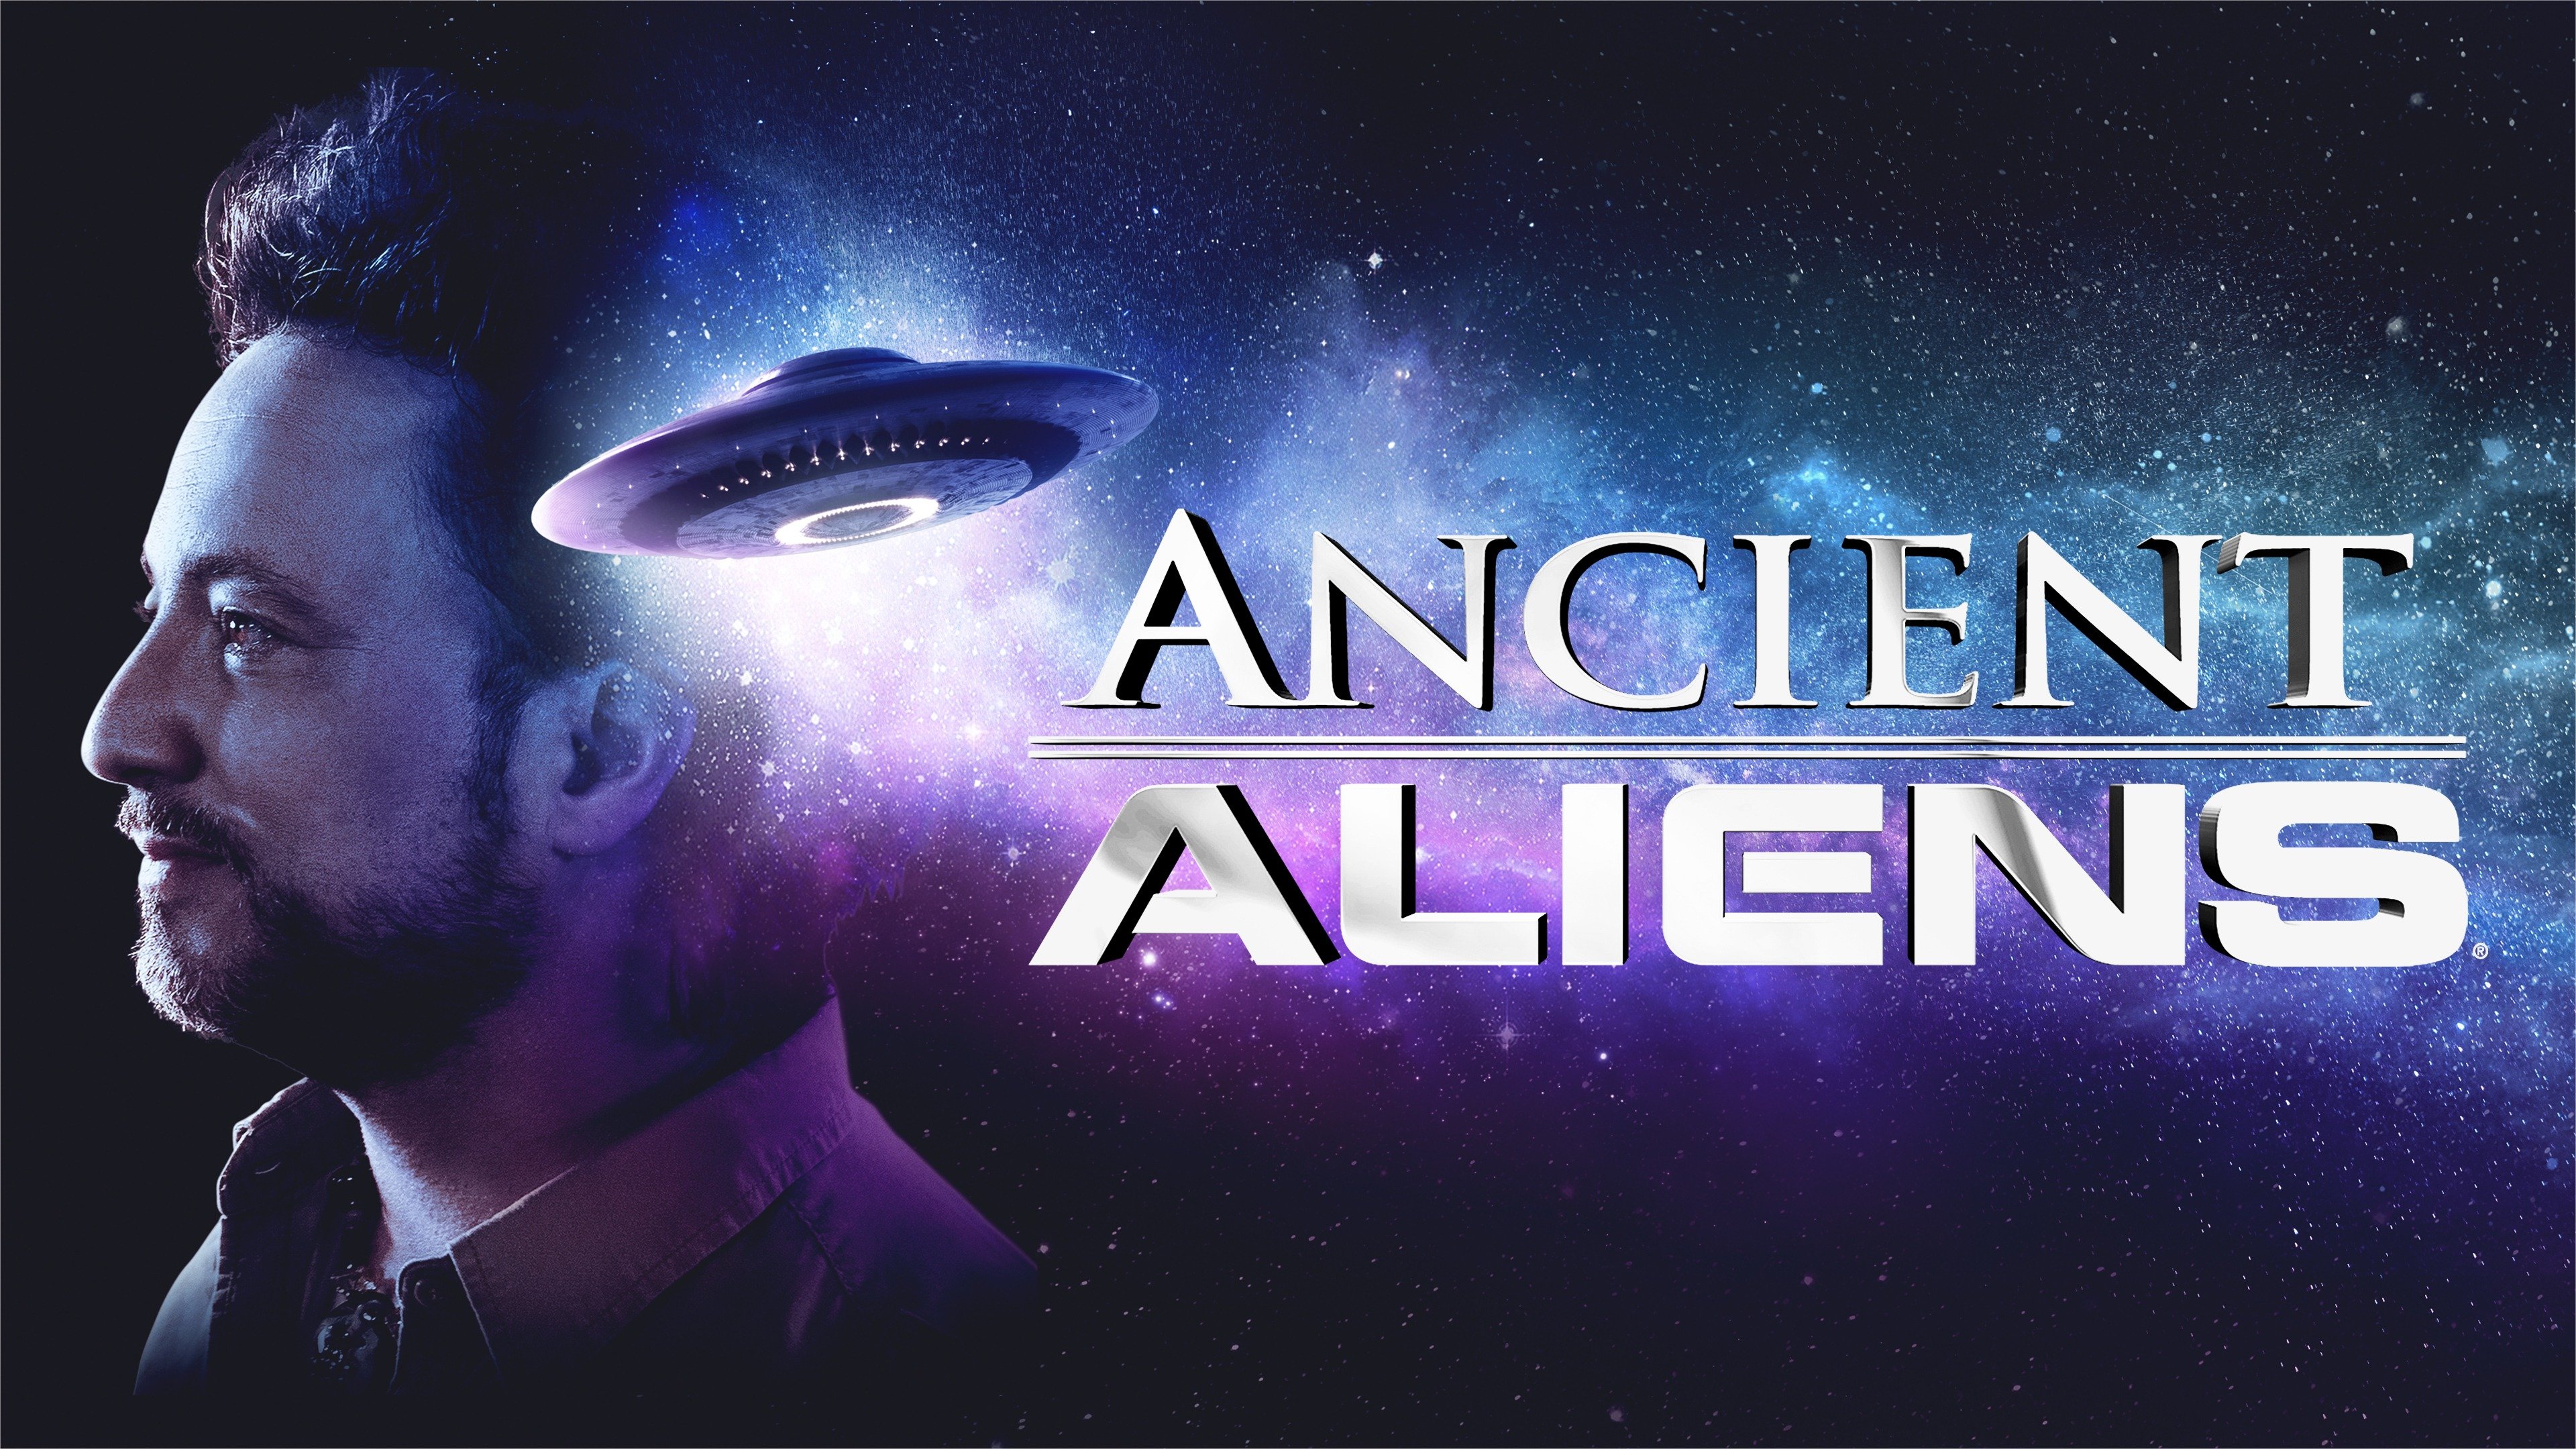 ancient aliens season 1 online primewire